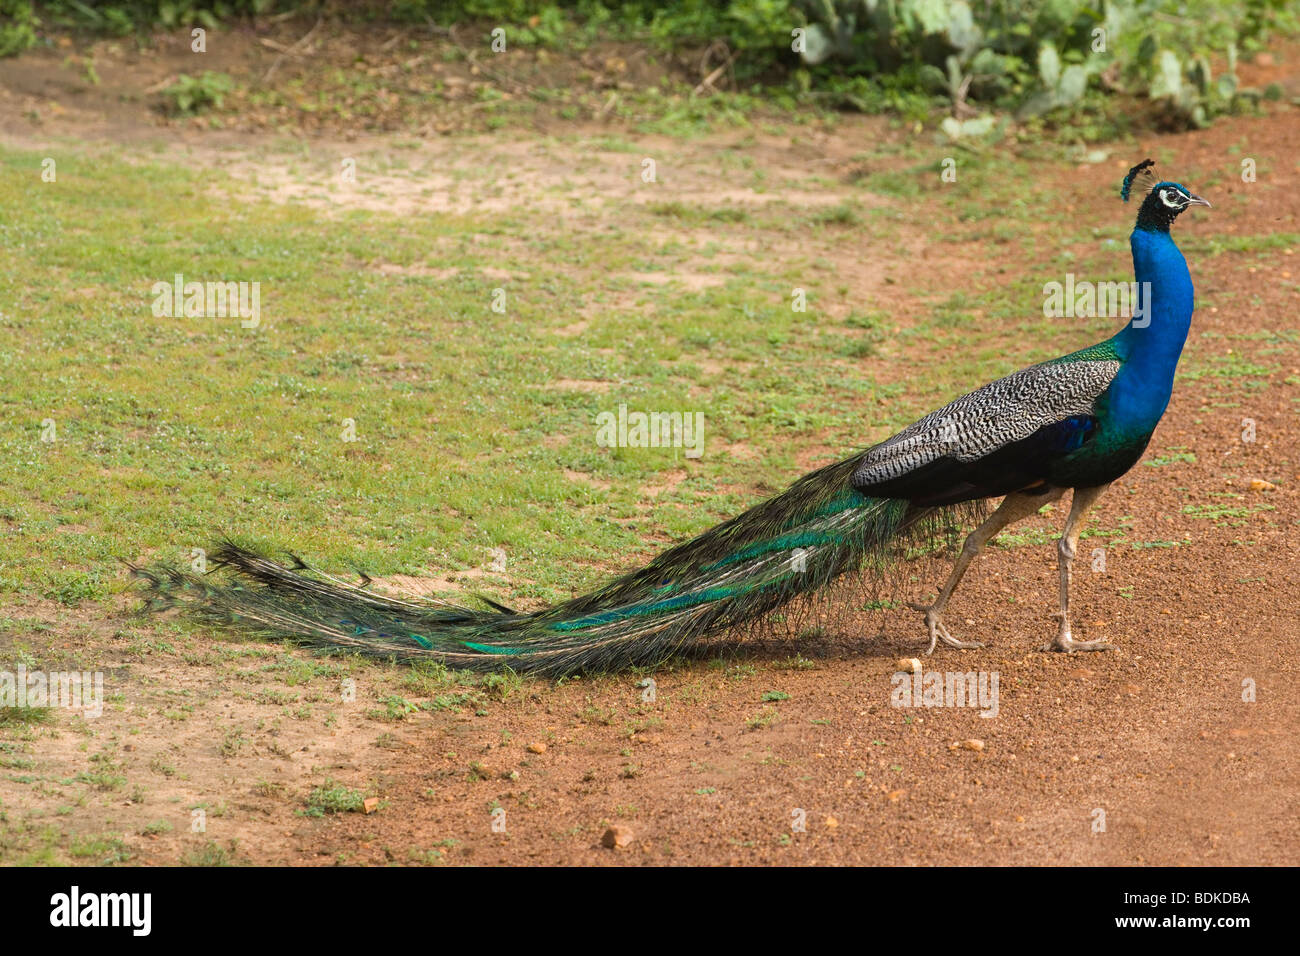 Bleu, commun ou paons indiens (Pavo cristata). Mâle adulte ou Peacock. Randonnée pédestre dans le Parc National Wasgomuwa, Sri Lanka. Banque D'Images